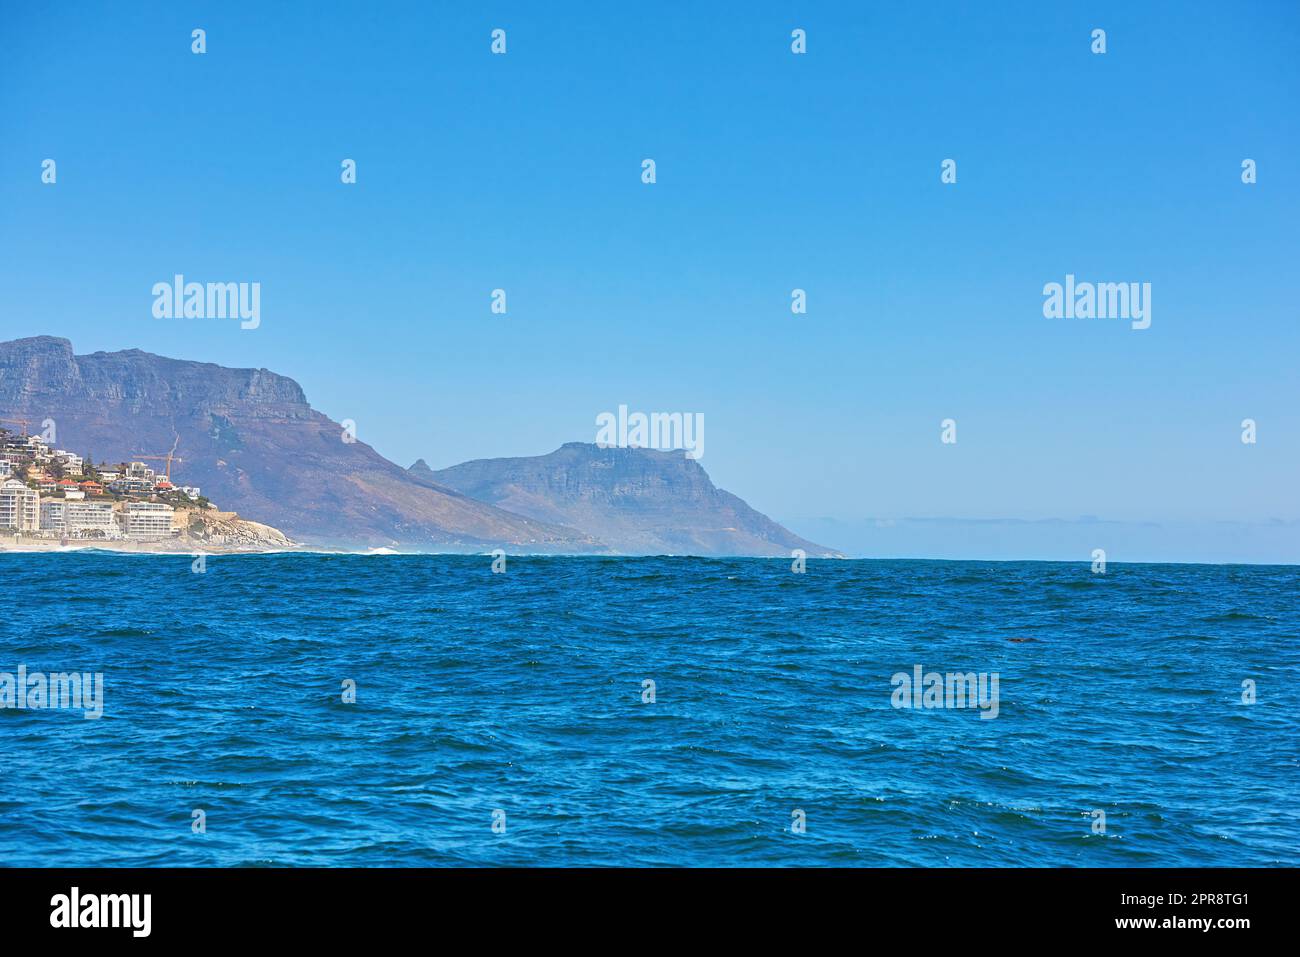 La mer bleu profond ou vaste étendue de l'océan ouvert sous ciel bleu clair copier l'espace avec Table Mountain en arrière-plan. Eaux calmes le matin d'été pittoresque et vue sur l'horizon Banque D'Images